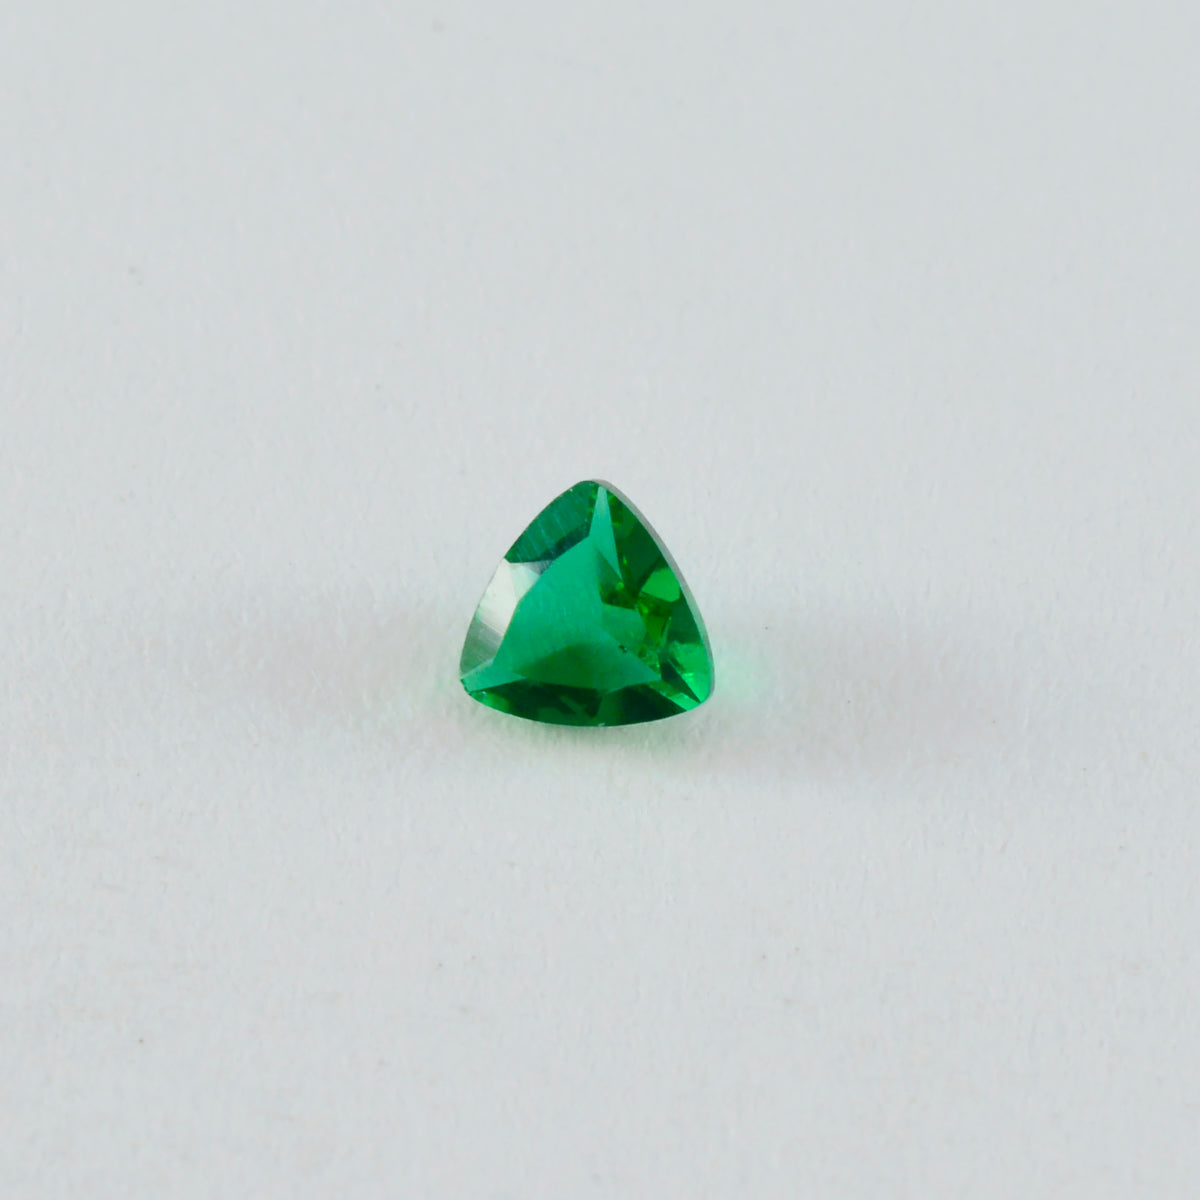 riyogems 1шт зеленый изумруд cz ограненный 11x11 мм форма триллиона драгоценный камень высокого качества